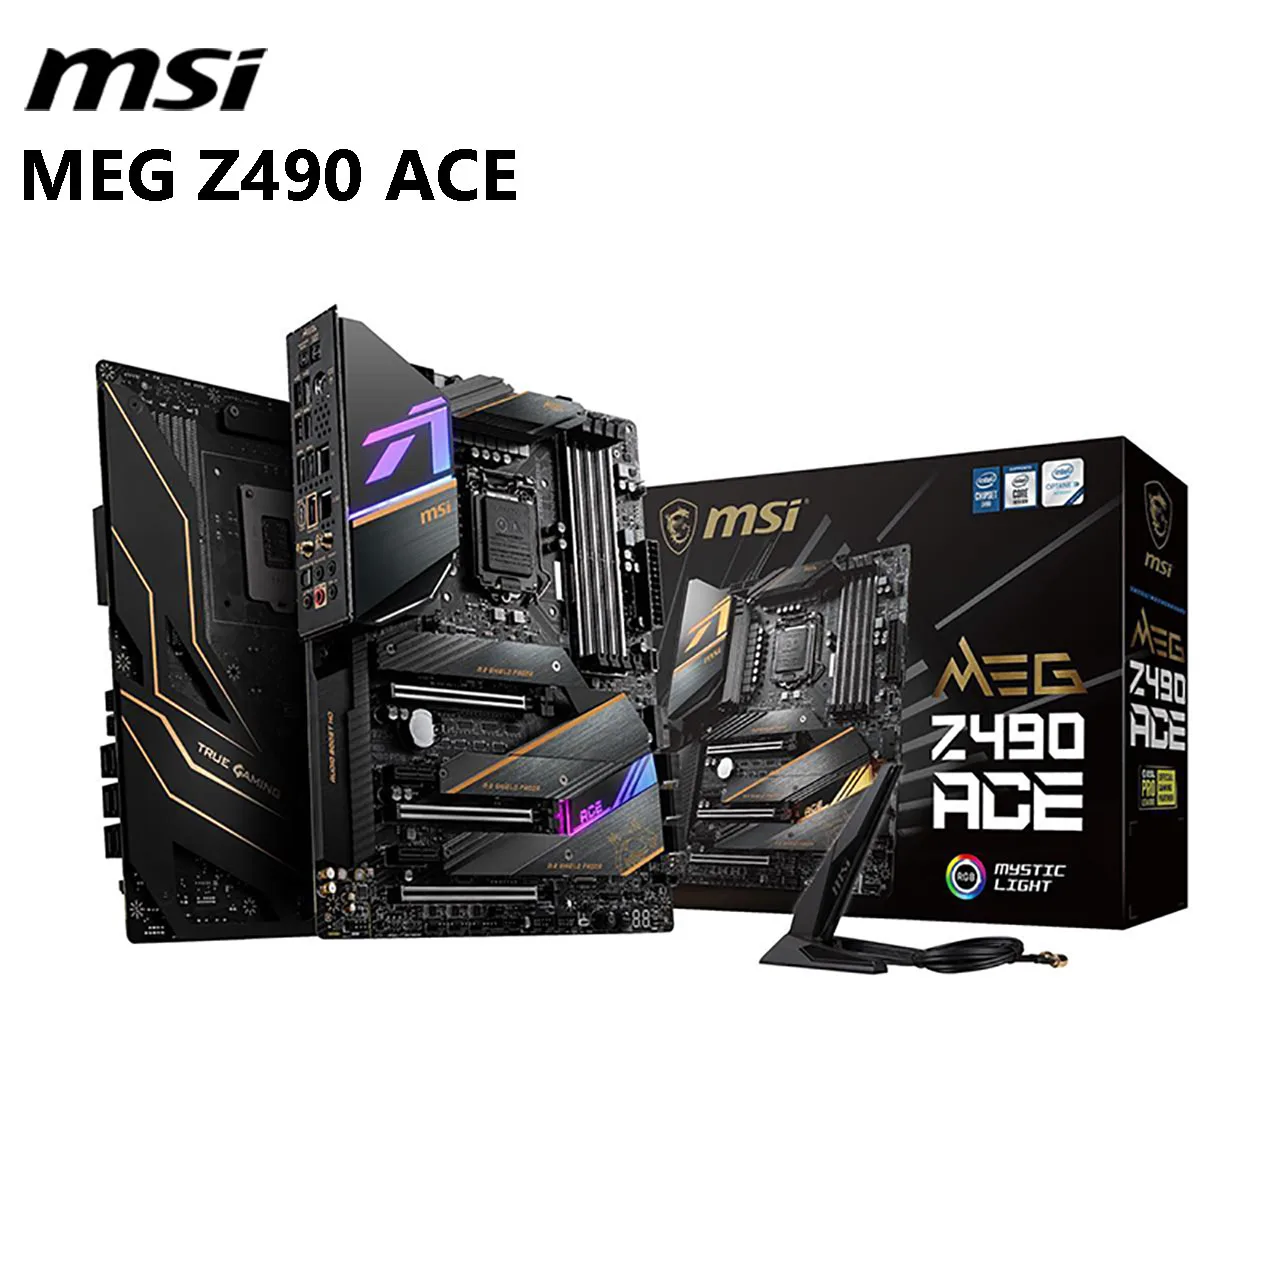 

New MSI MEG Z490 ACE LGA 1200 Intel Z490 SATA 6Gb/s ATX Intel Motherboard RGB Lighting DDR4 5000MHz 128GB Wi-Fi 6 Dual Channel